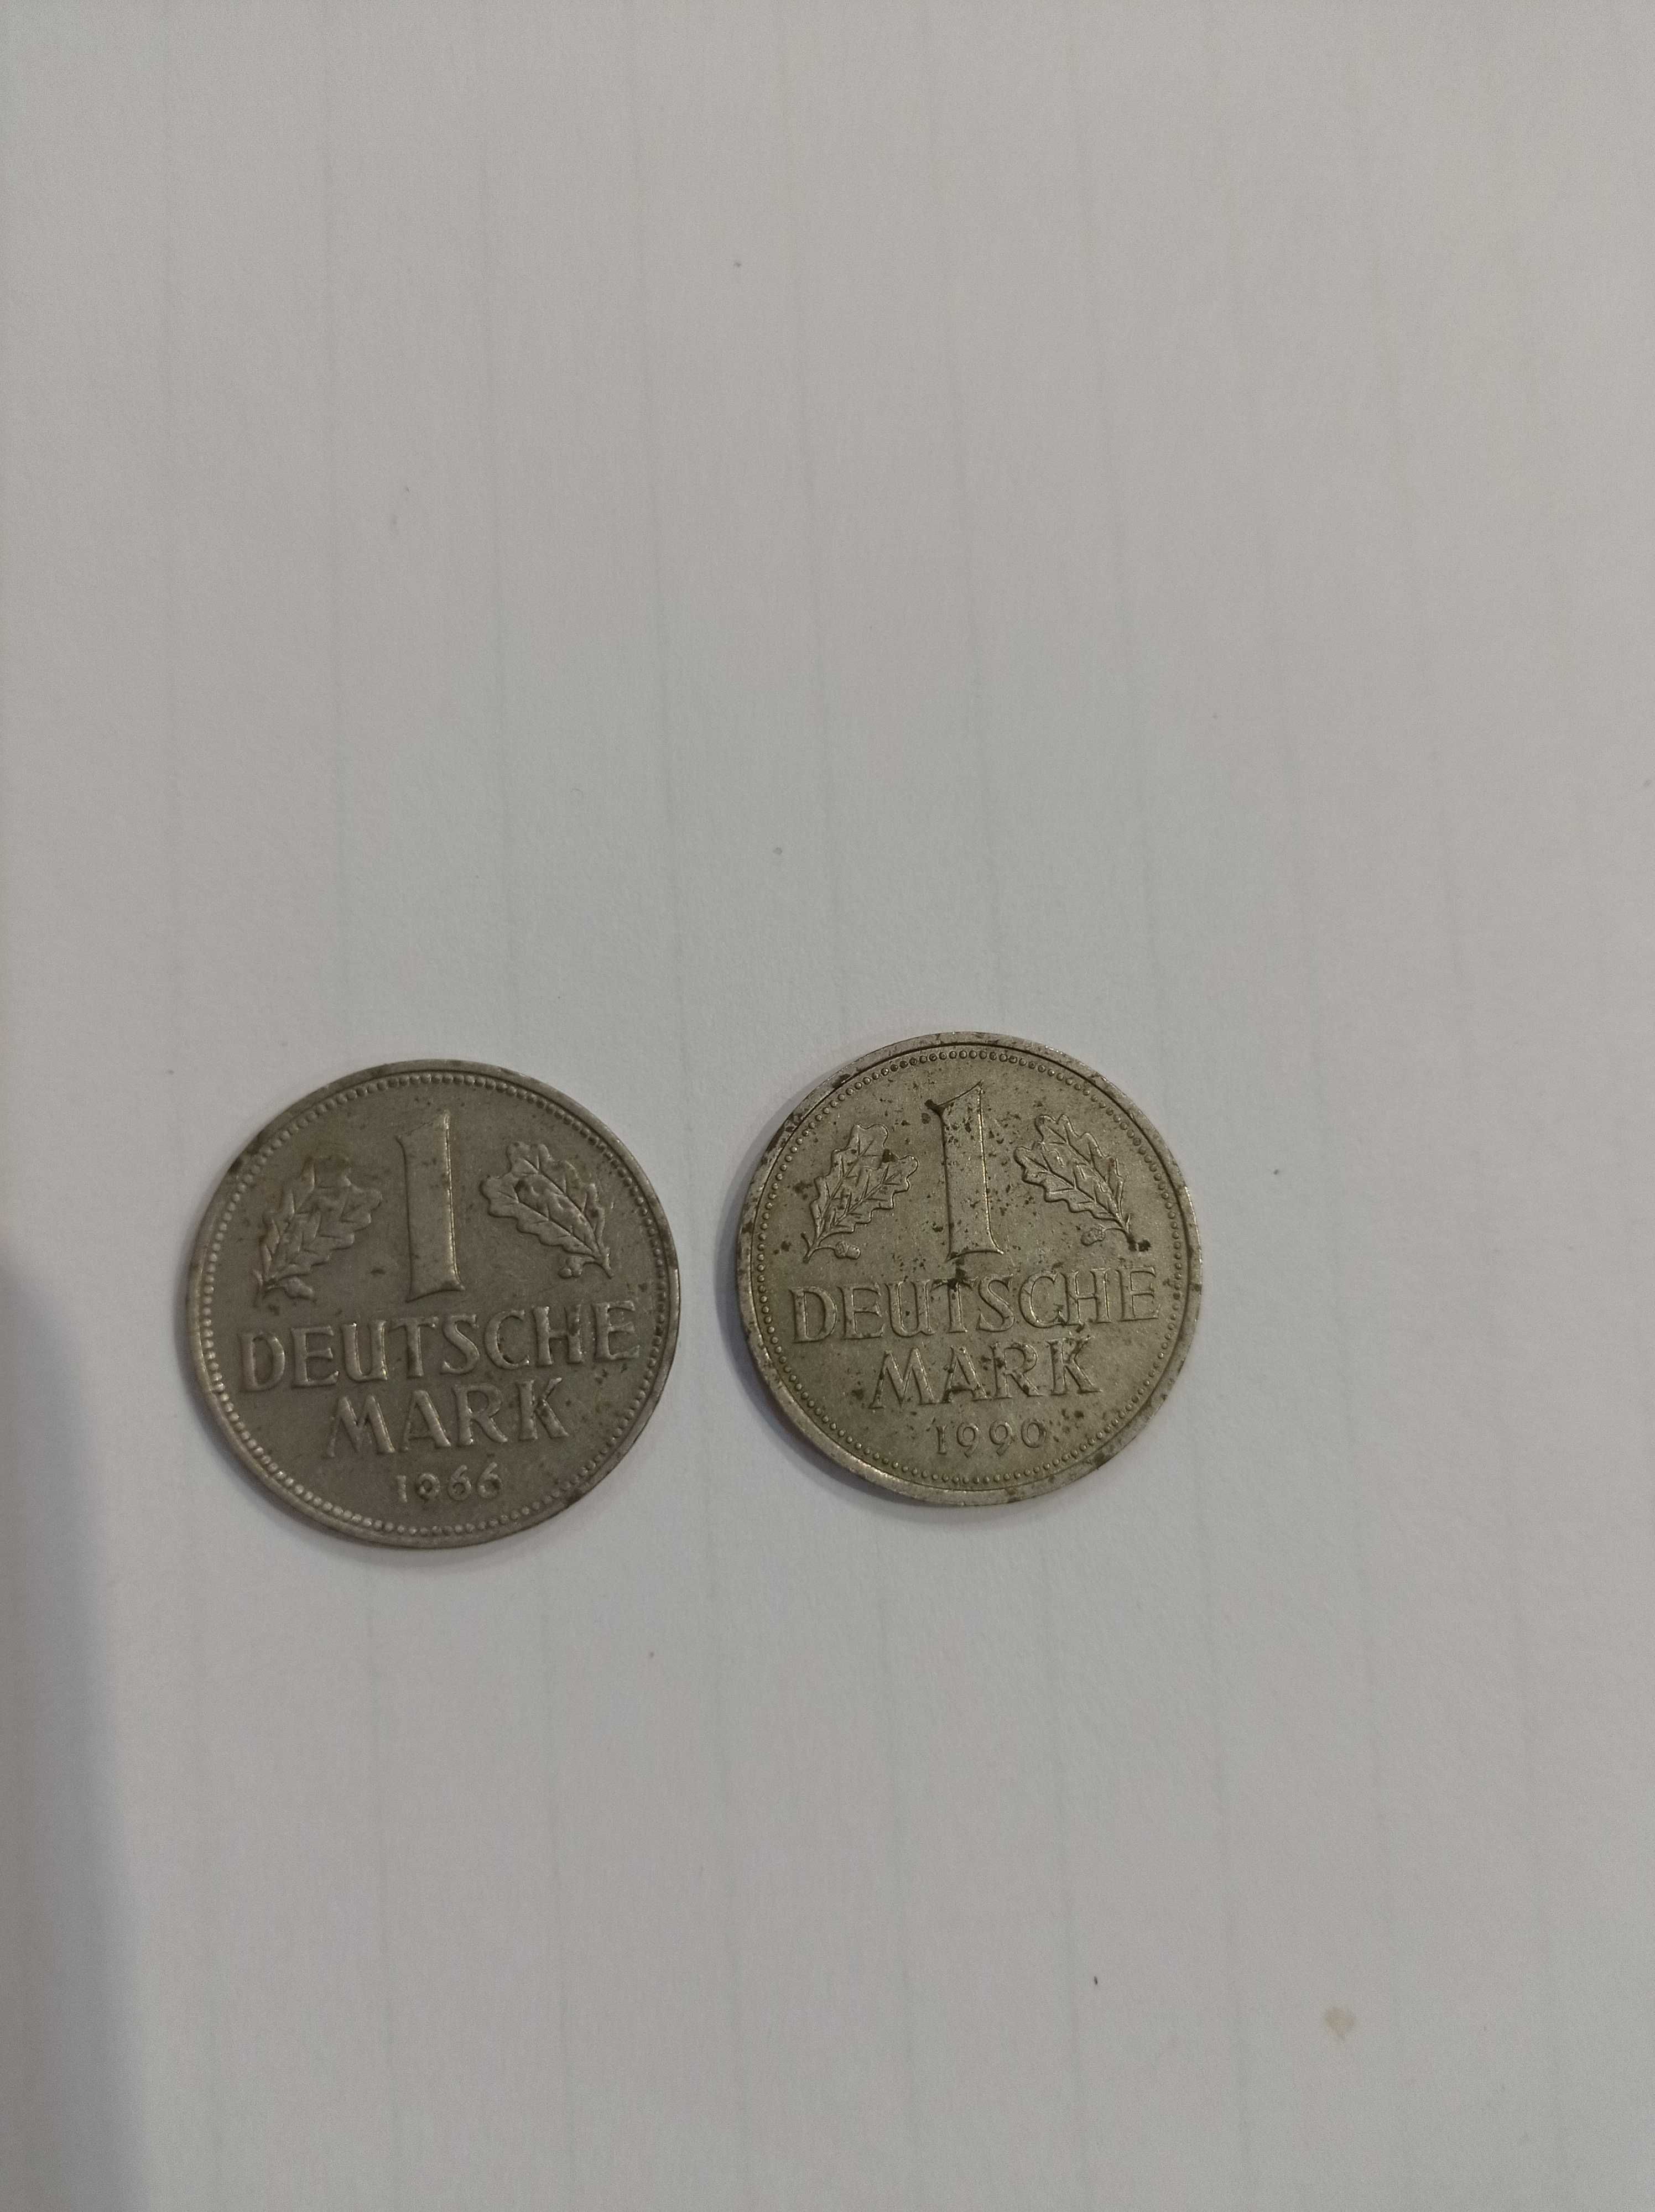 1 deutsche mark, марки Німеччини/Германии, 1990г, 1966г